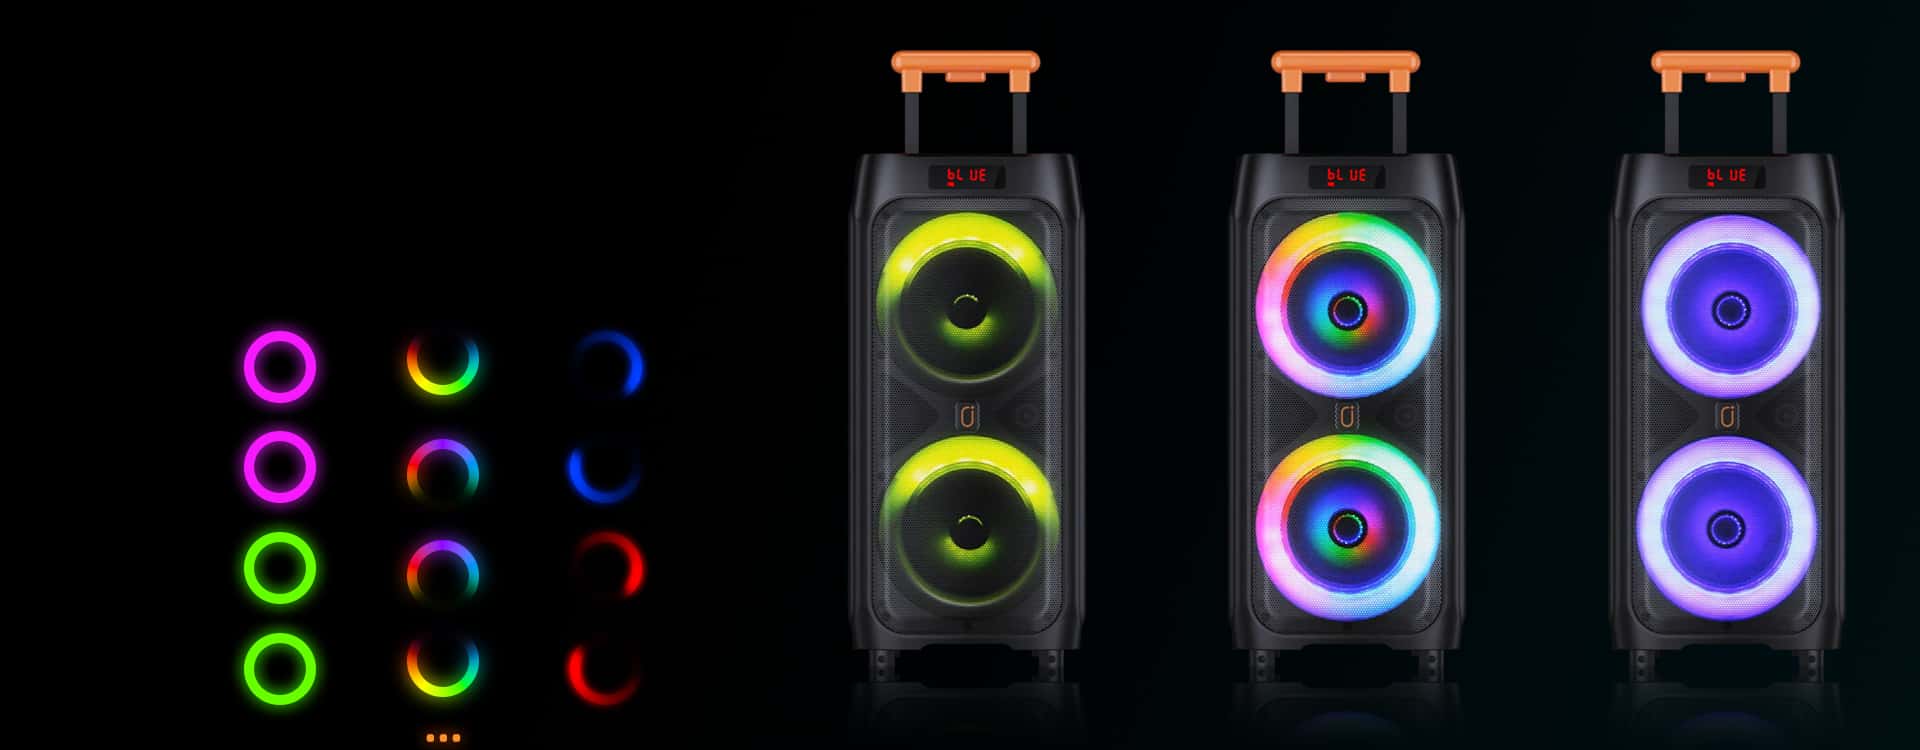 jyx t9 karaoke machine with dynamic light show